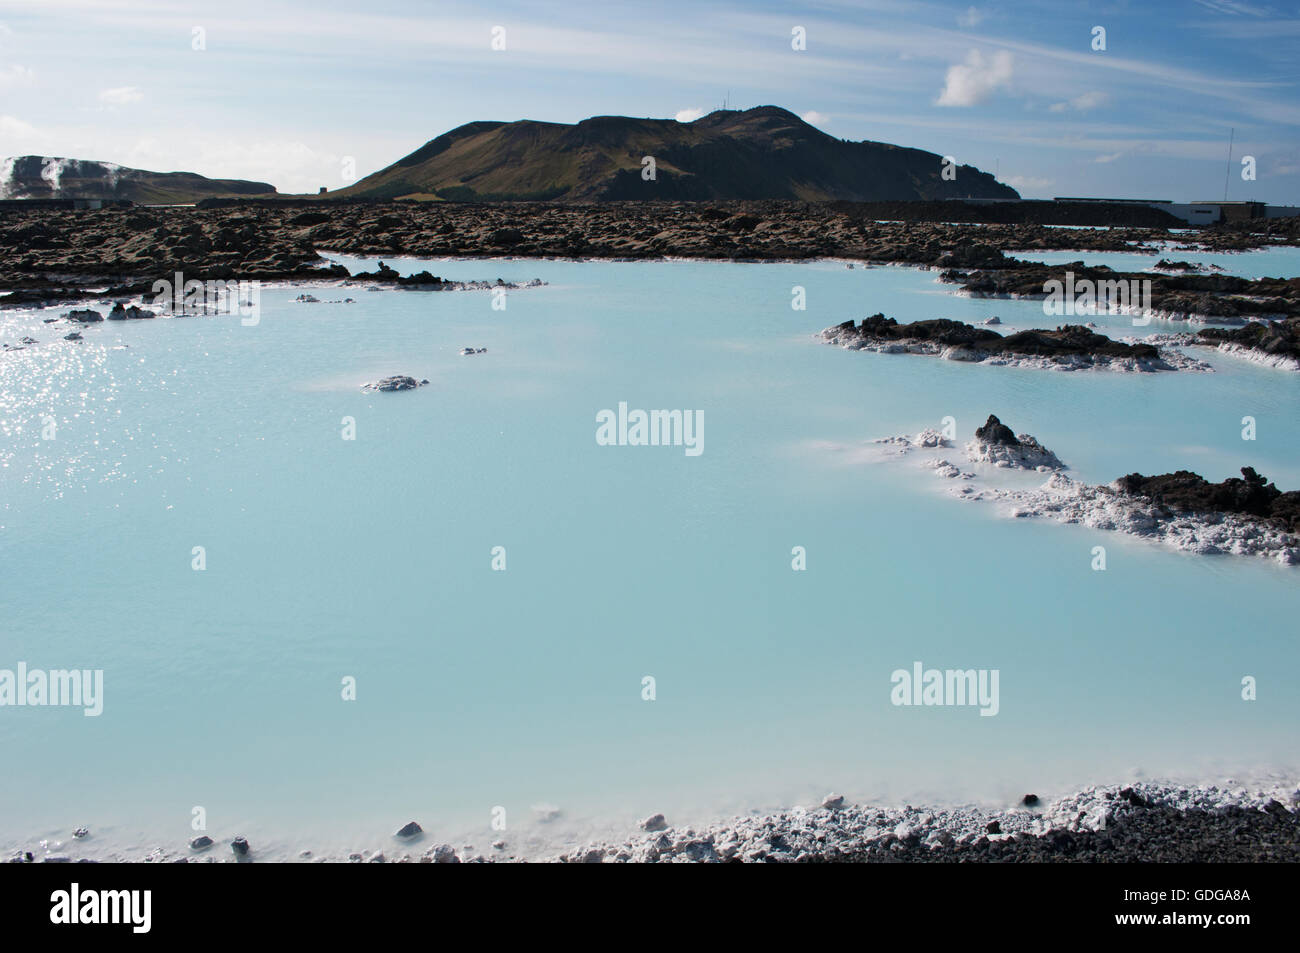 Islande : détails du Blue Lagoon, un spa géothermique situé dans un champ de lave en Grindavik, l'une des attractions touristiques les plus visitées Banque D'Images